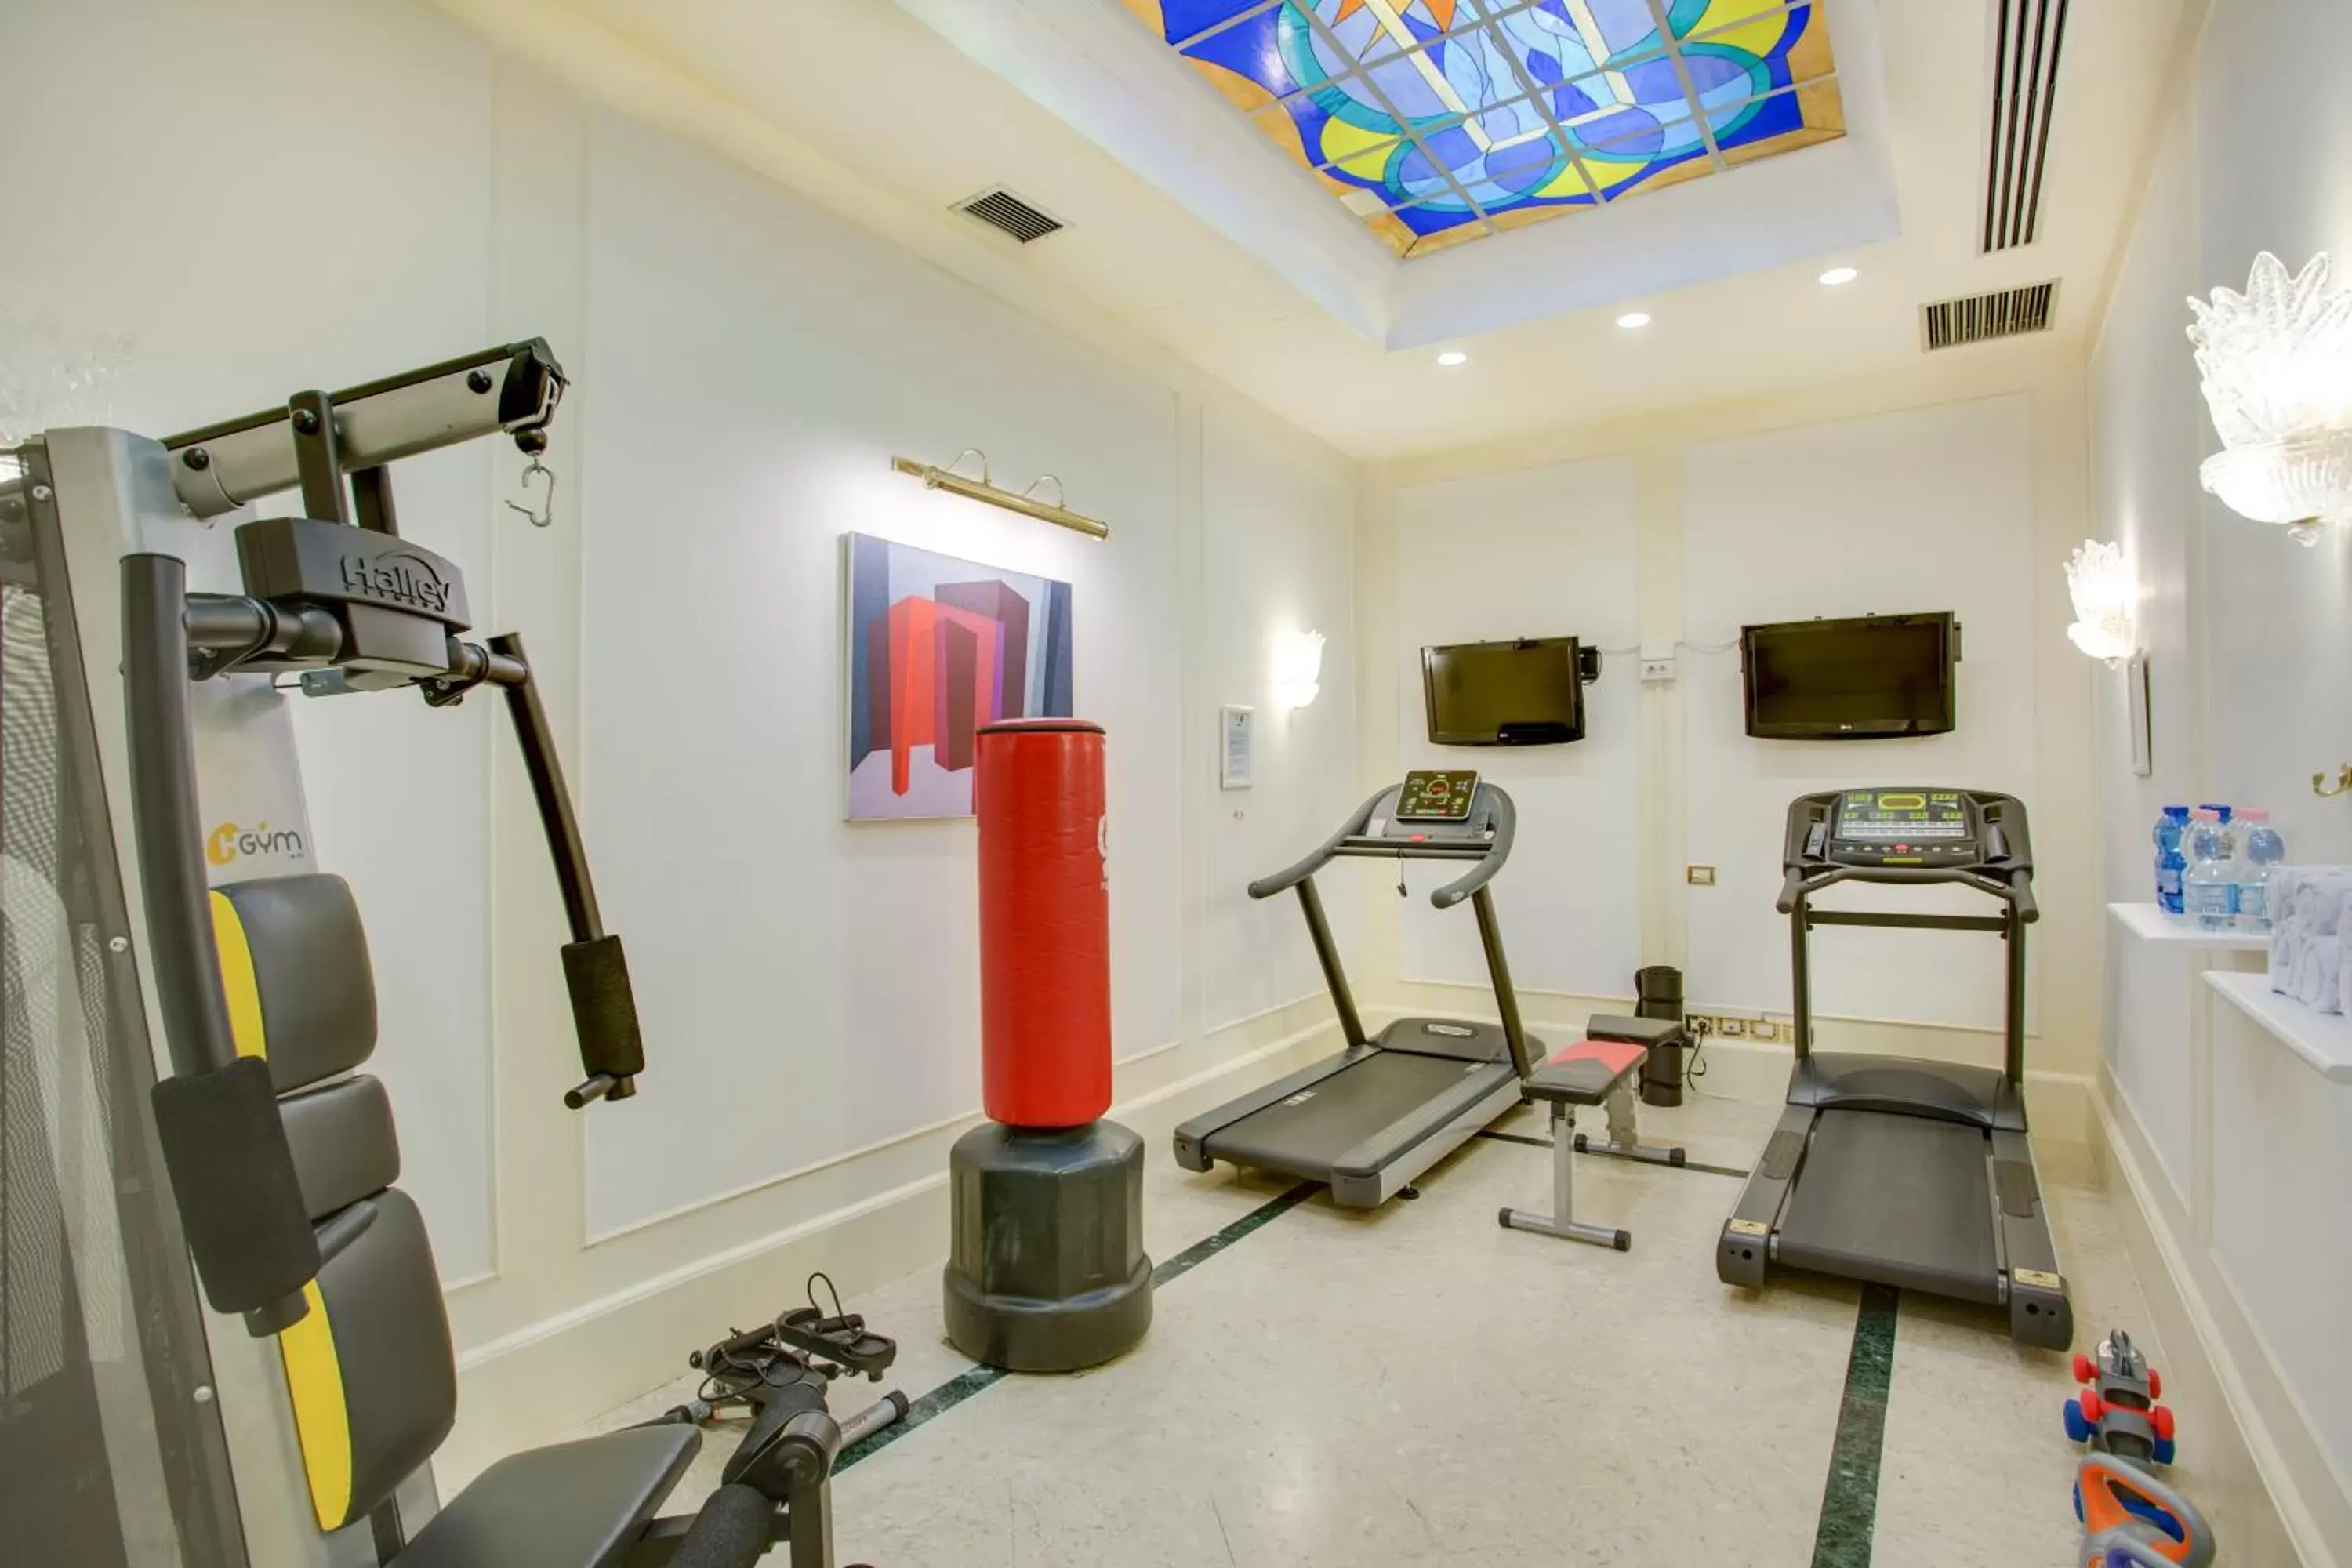 Fitness centre/facilities, Fitness Center/Facilities in Grand Hotel Adriatico